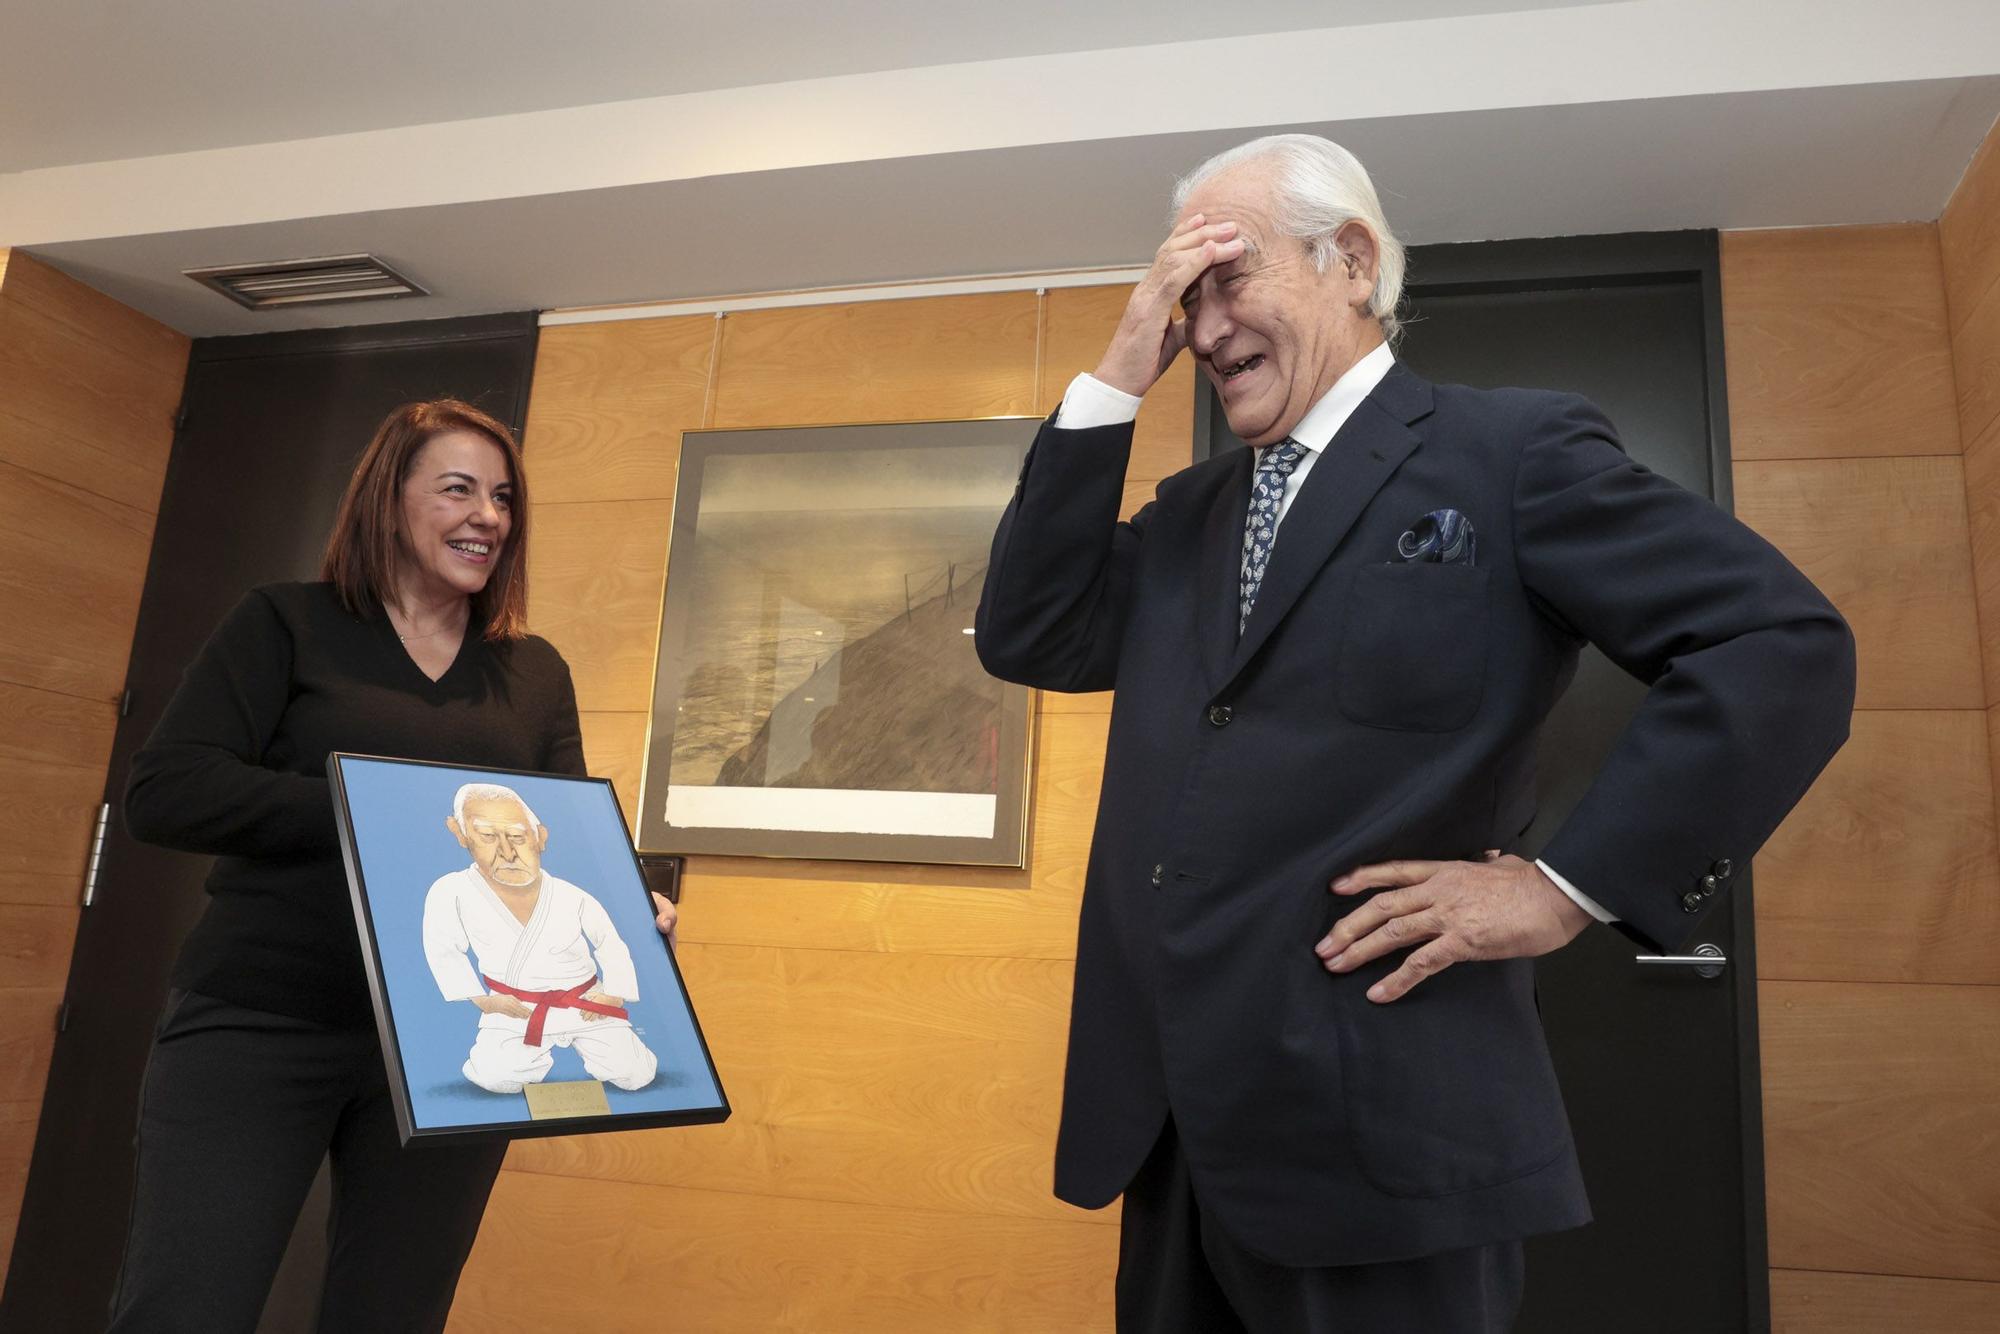 El gesto de sorpresa de Taira al ver su caricatura, que le muestra Ángeles Rivero. | Irma Collín